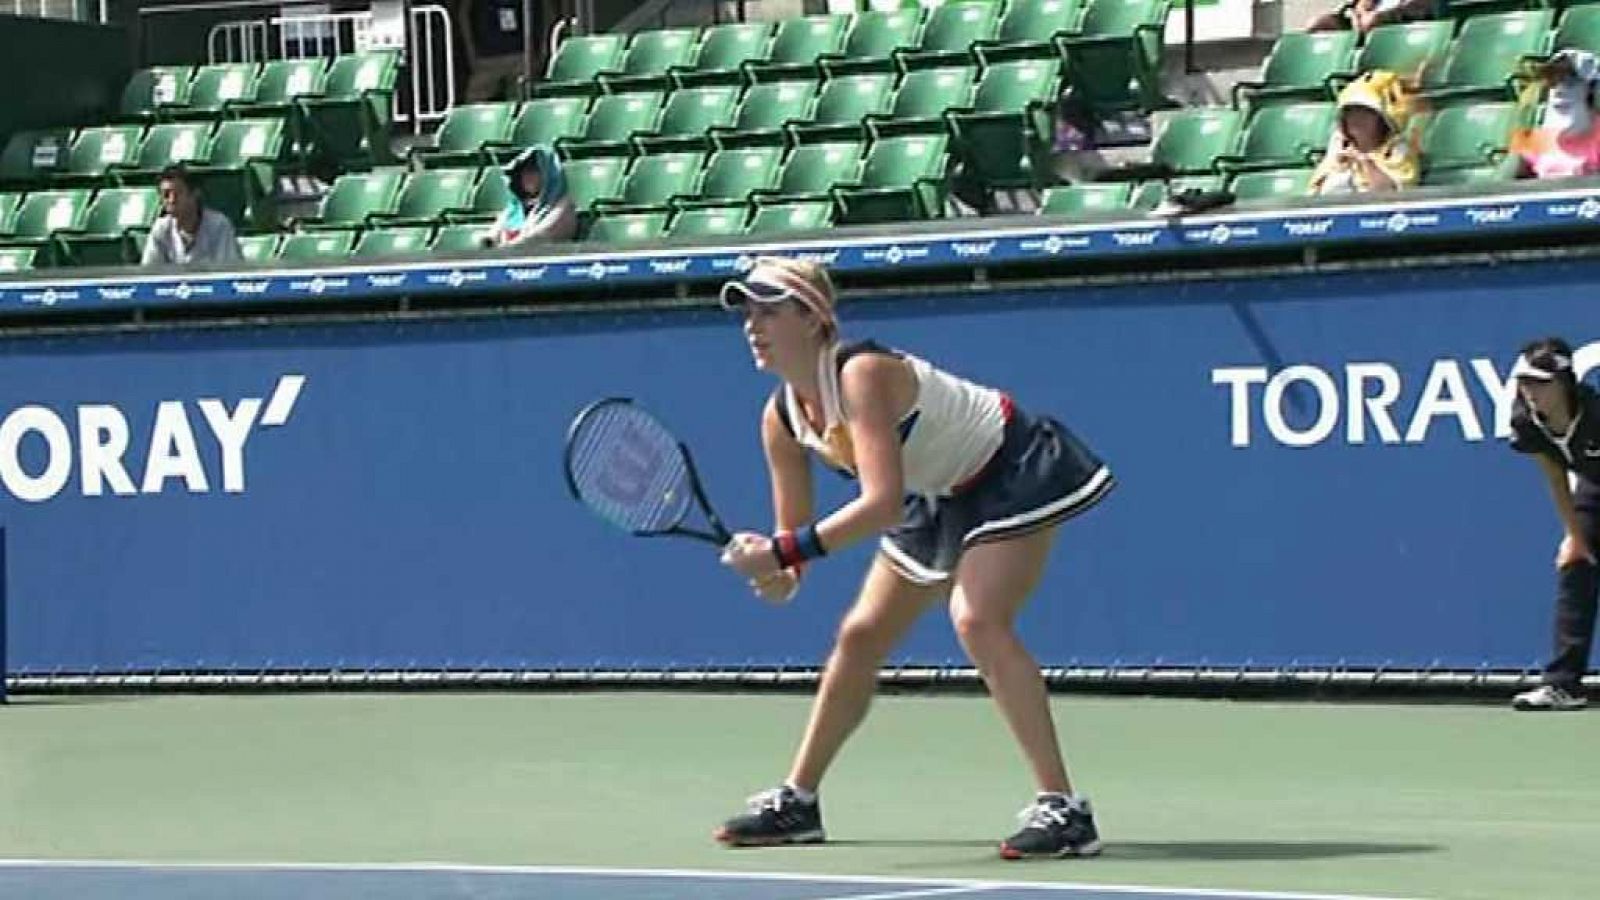 Tenis - Tenis - WTA Torneo Tokio (Japón): A. Pavlyuchenkova - C. Bellis